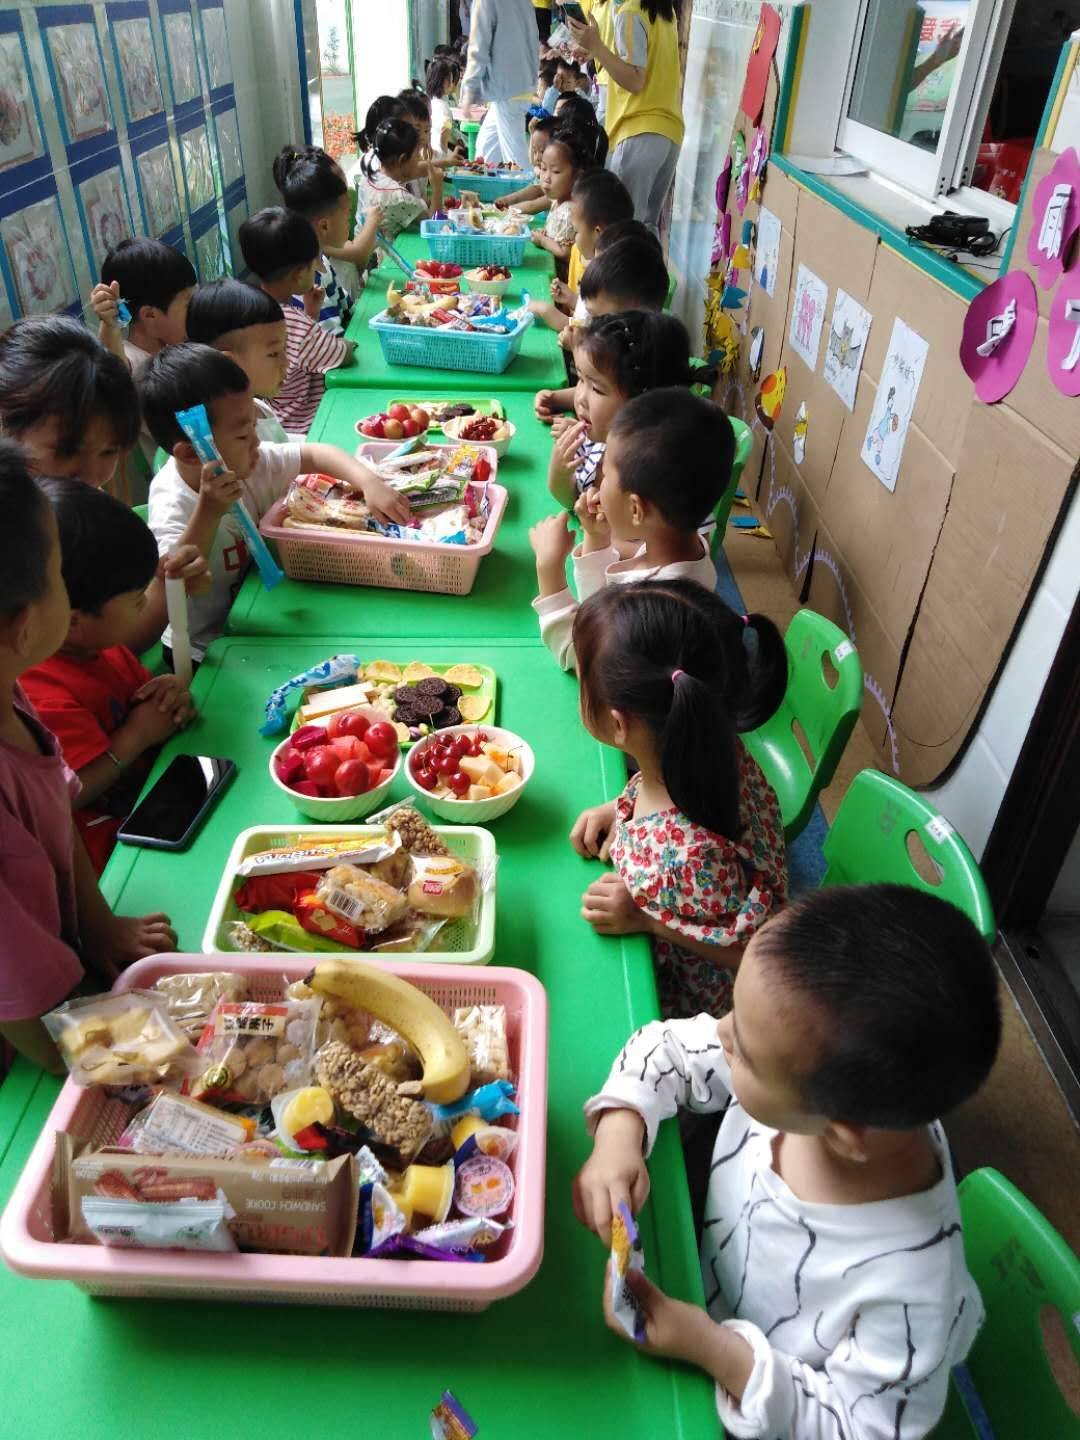 武陵源索溪中心幼儿园 美食共享会 让 六一 儿童节特殊有意义